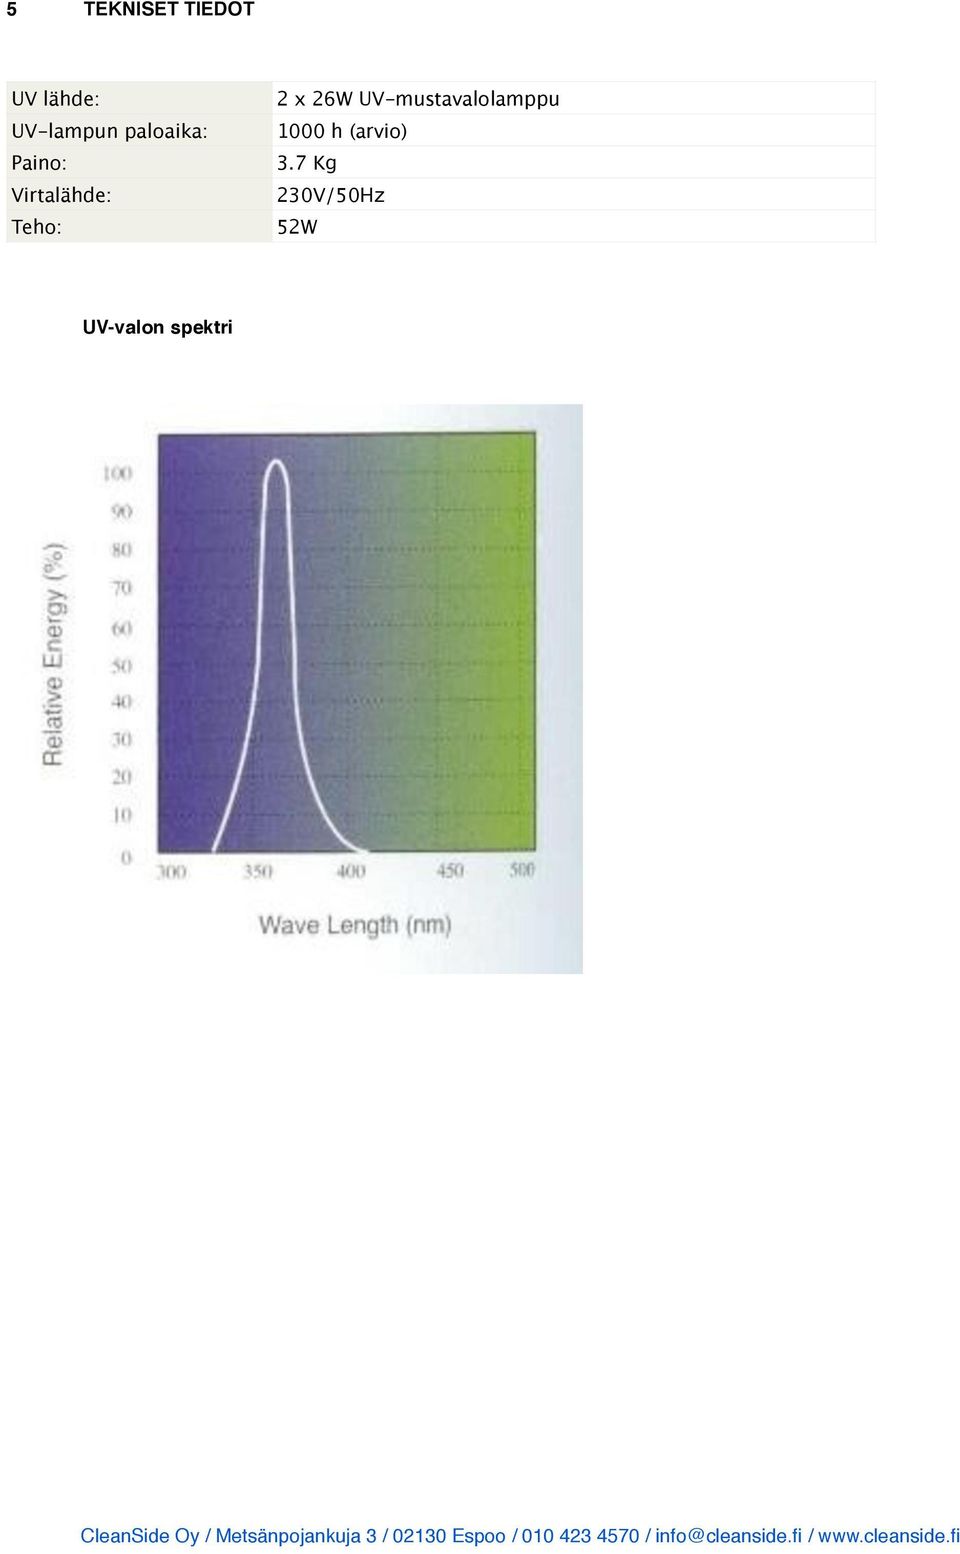 UV-valon spektri 2 x 26W